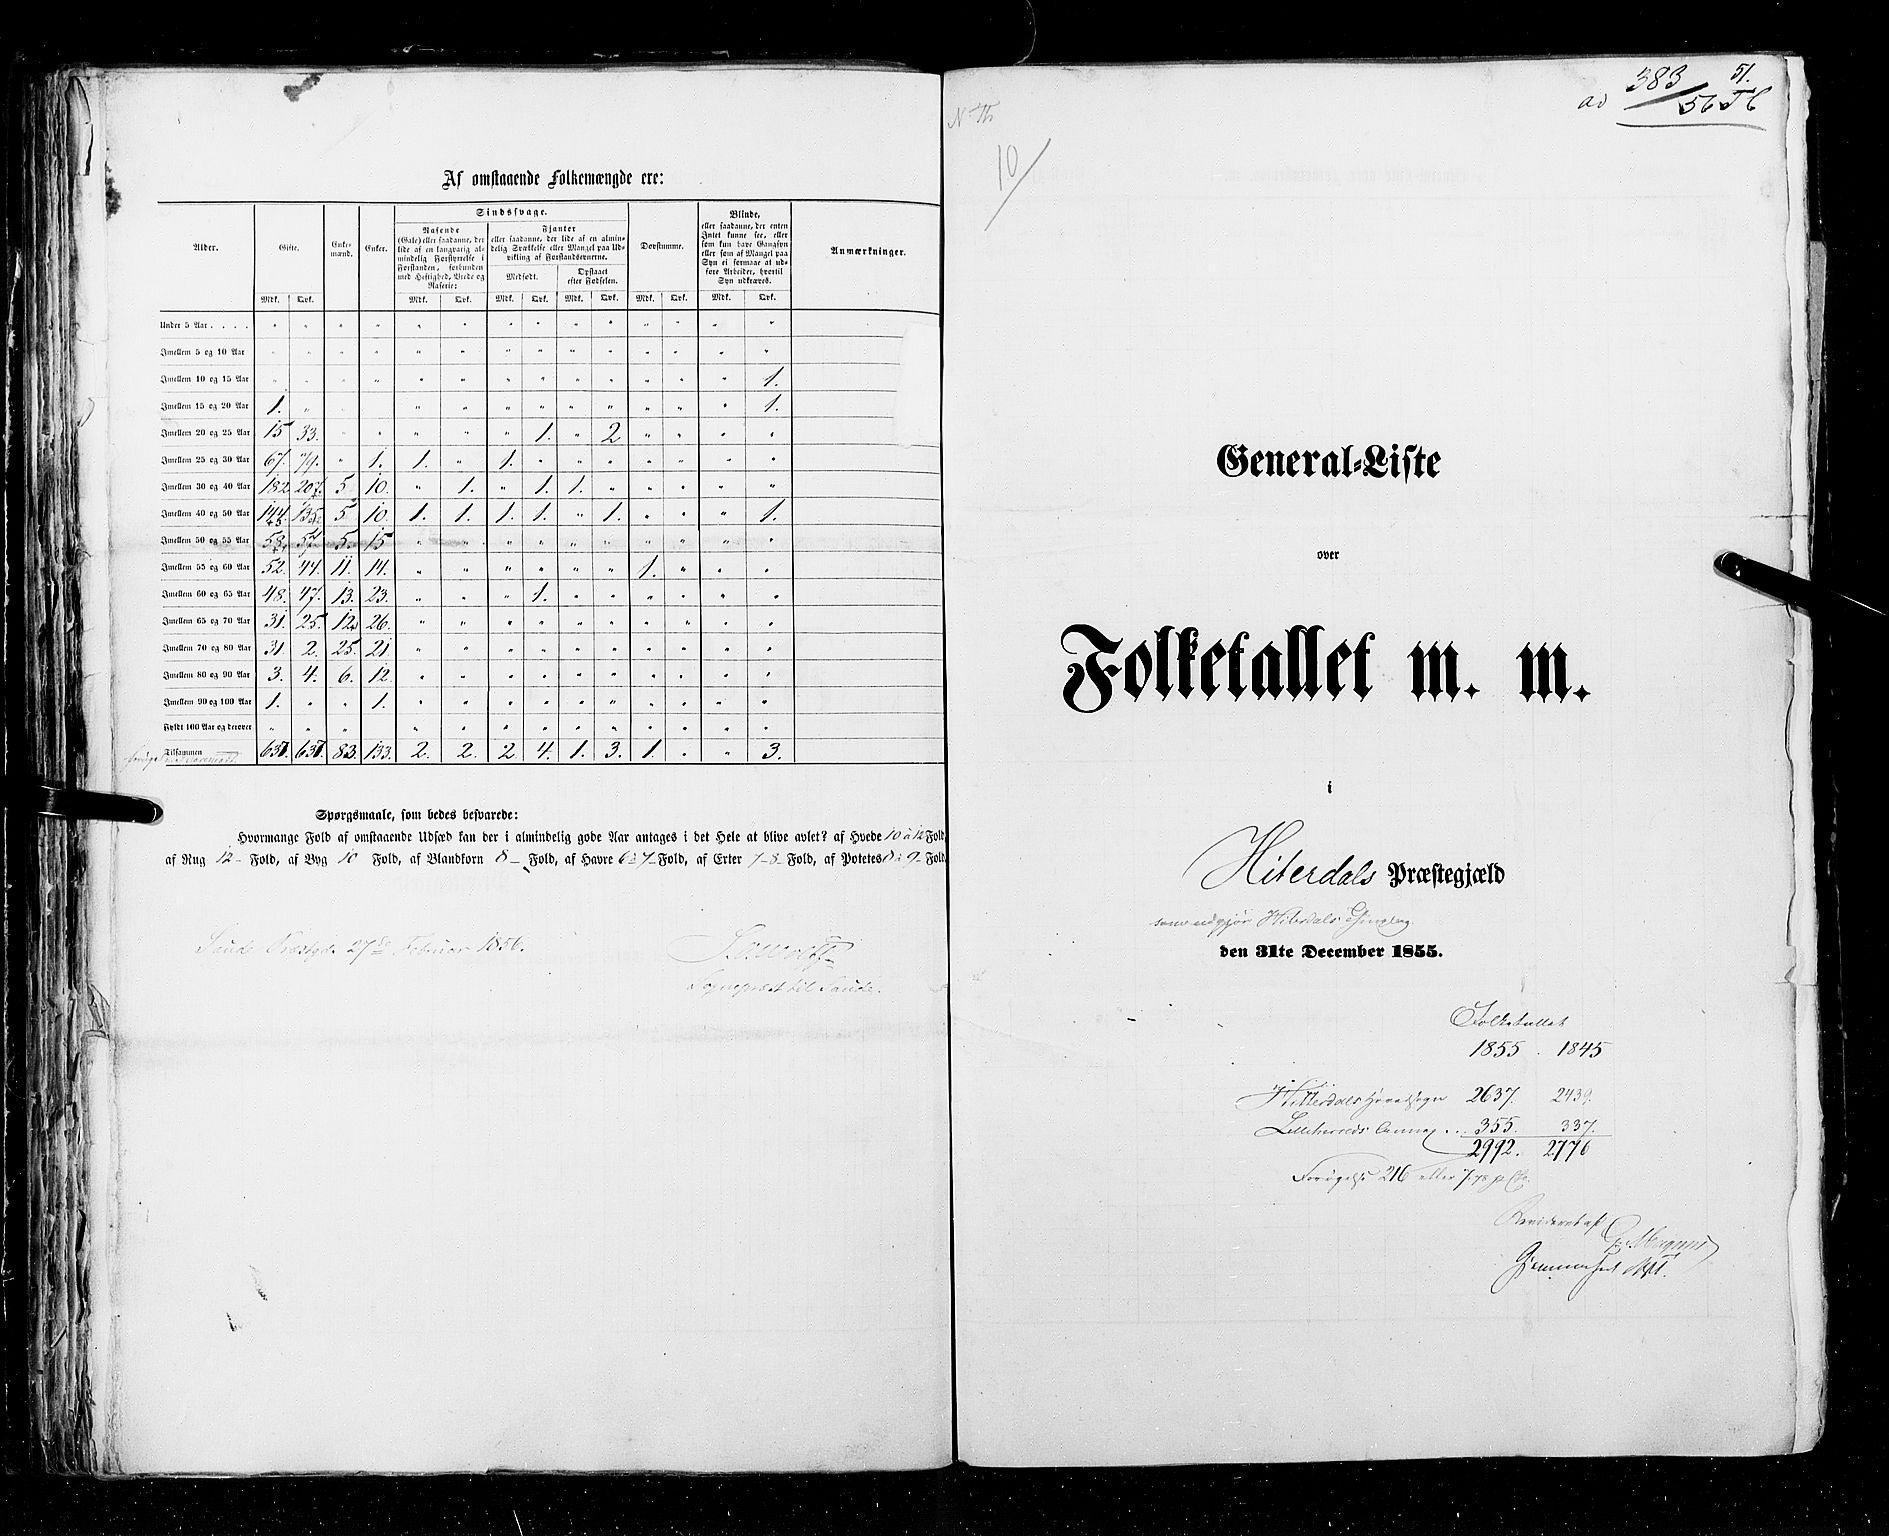 RA, Folketellingen 1855, bind 3: Bratsberg amt, Nedenes amt og Lister og Mandal amt, 1855, s. 51